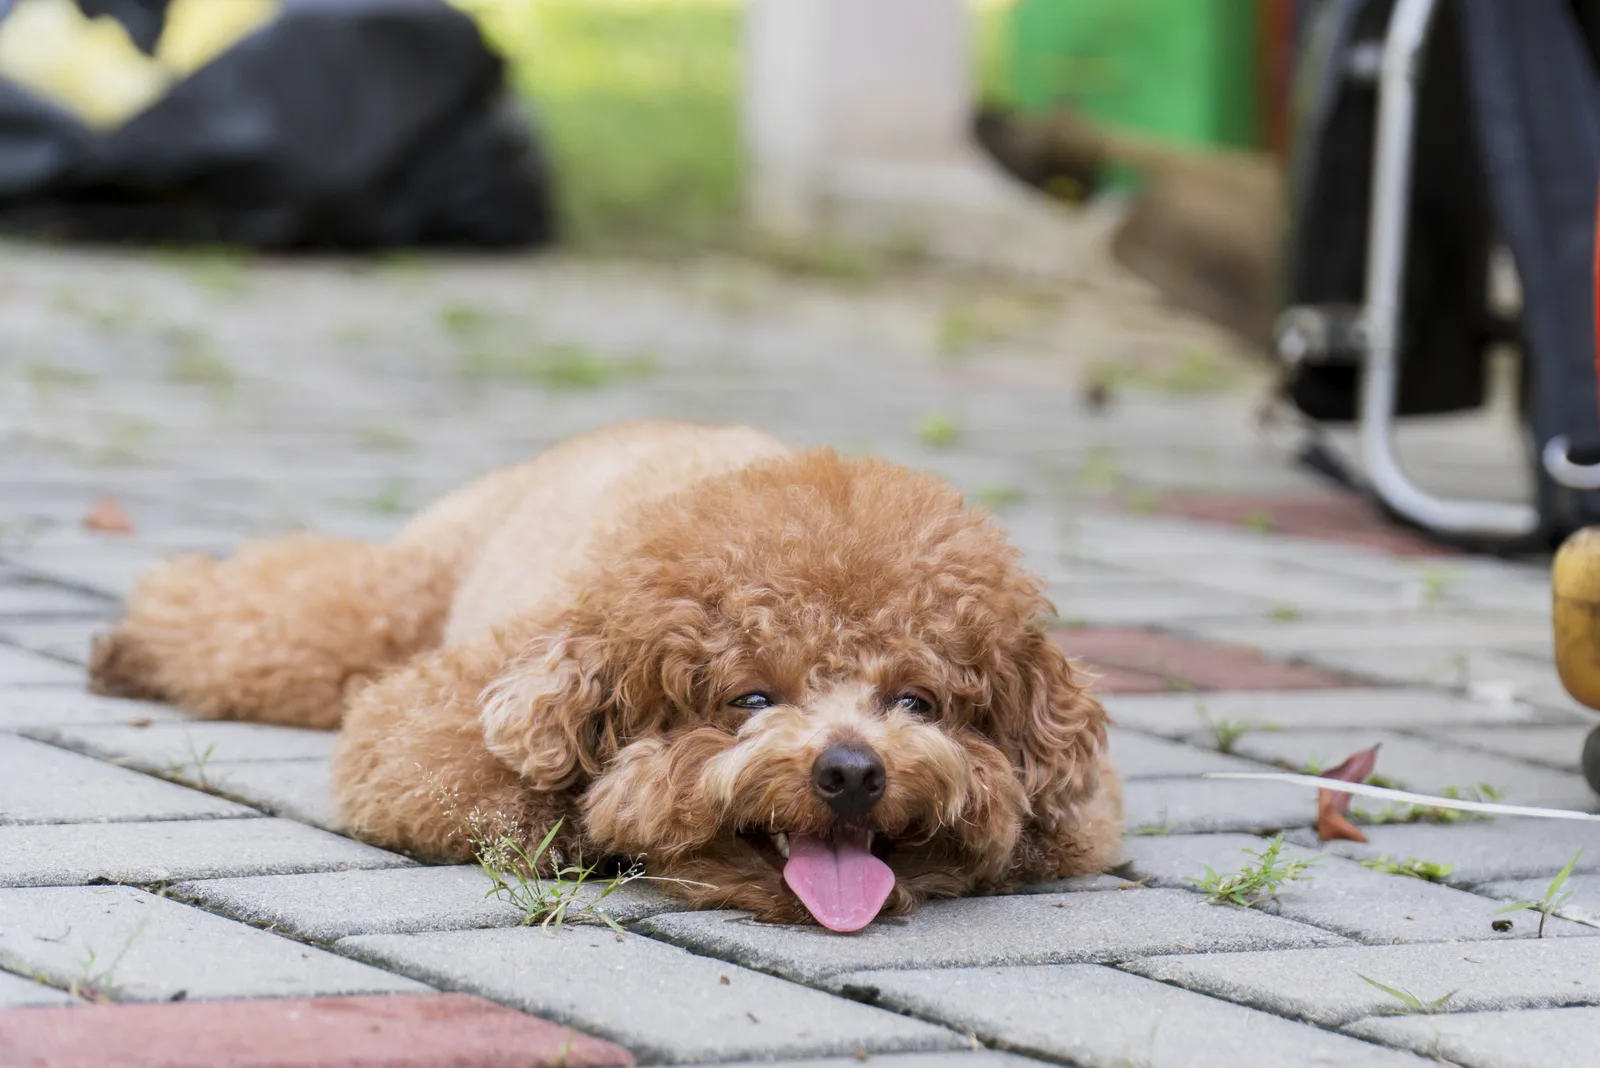 miniature poodle resting on floor